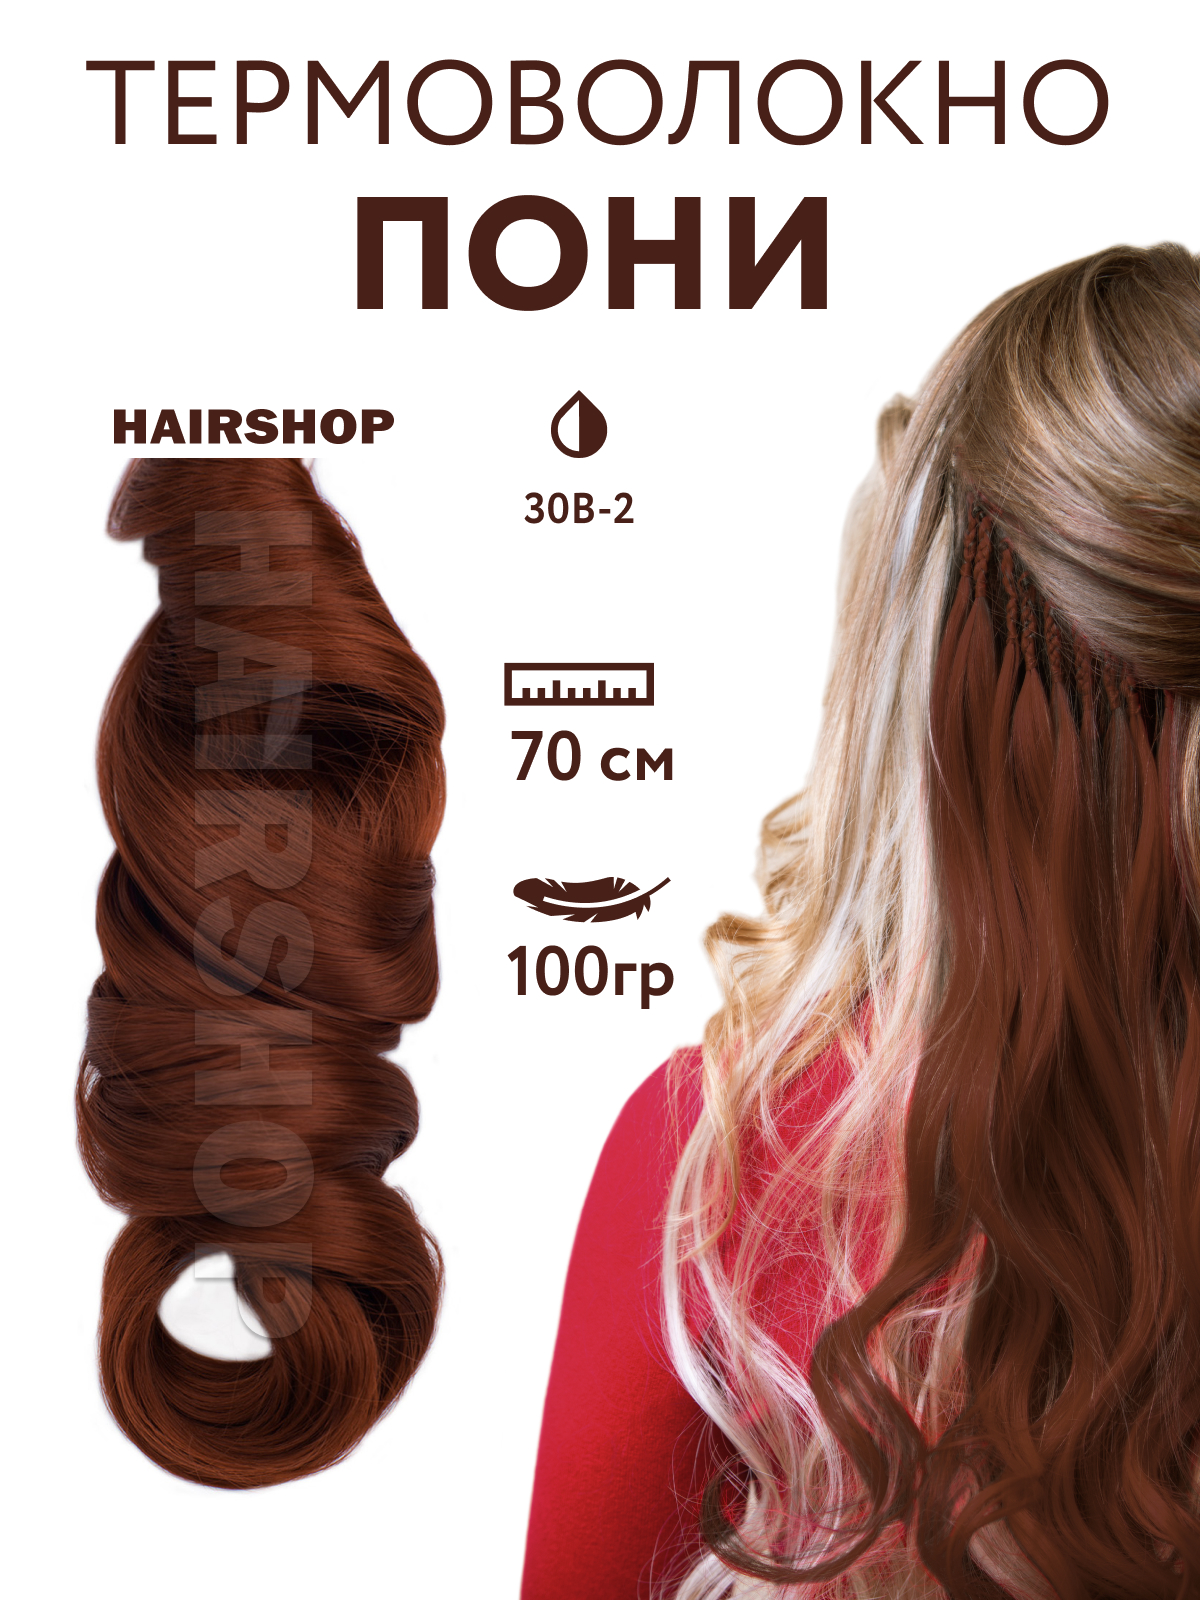 Канекалон HAIRSHOP Пони HairUp для точечного афронаращивания 30B-2 Натурально рыжий 1,4м канекалон hairshop пони hairup для точечного афронаращивания 135s красно рыжий 1 4м